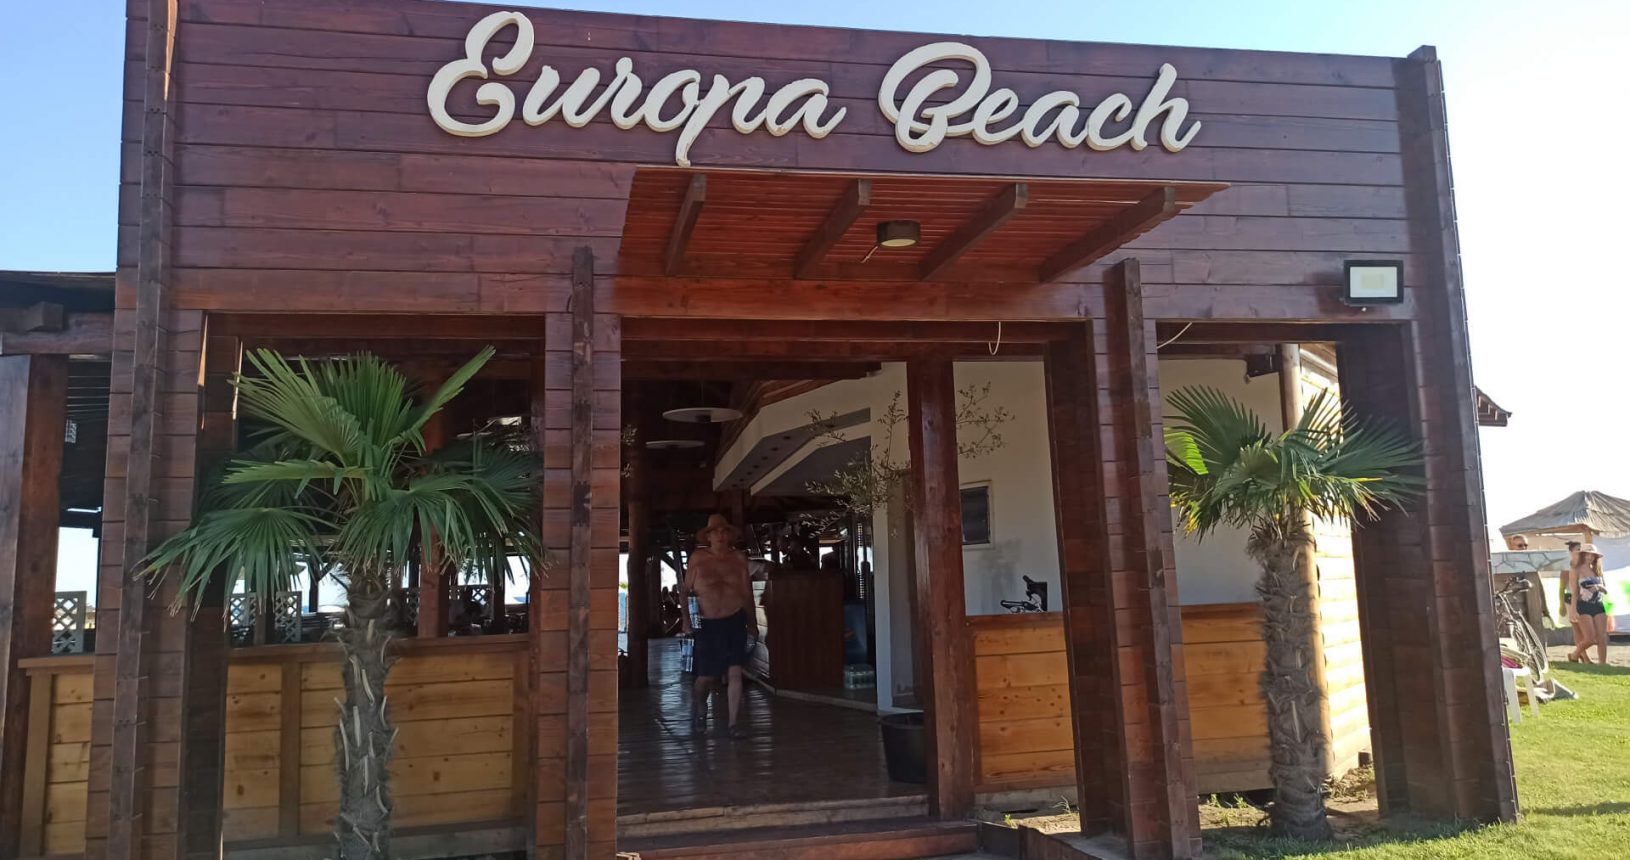 Europa Beach bar entrance